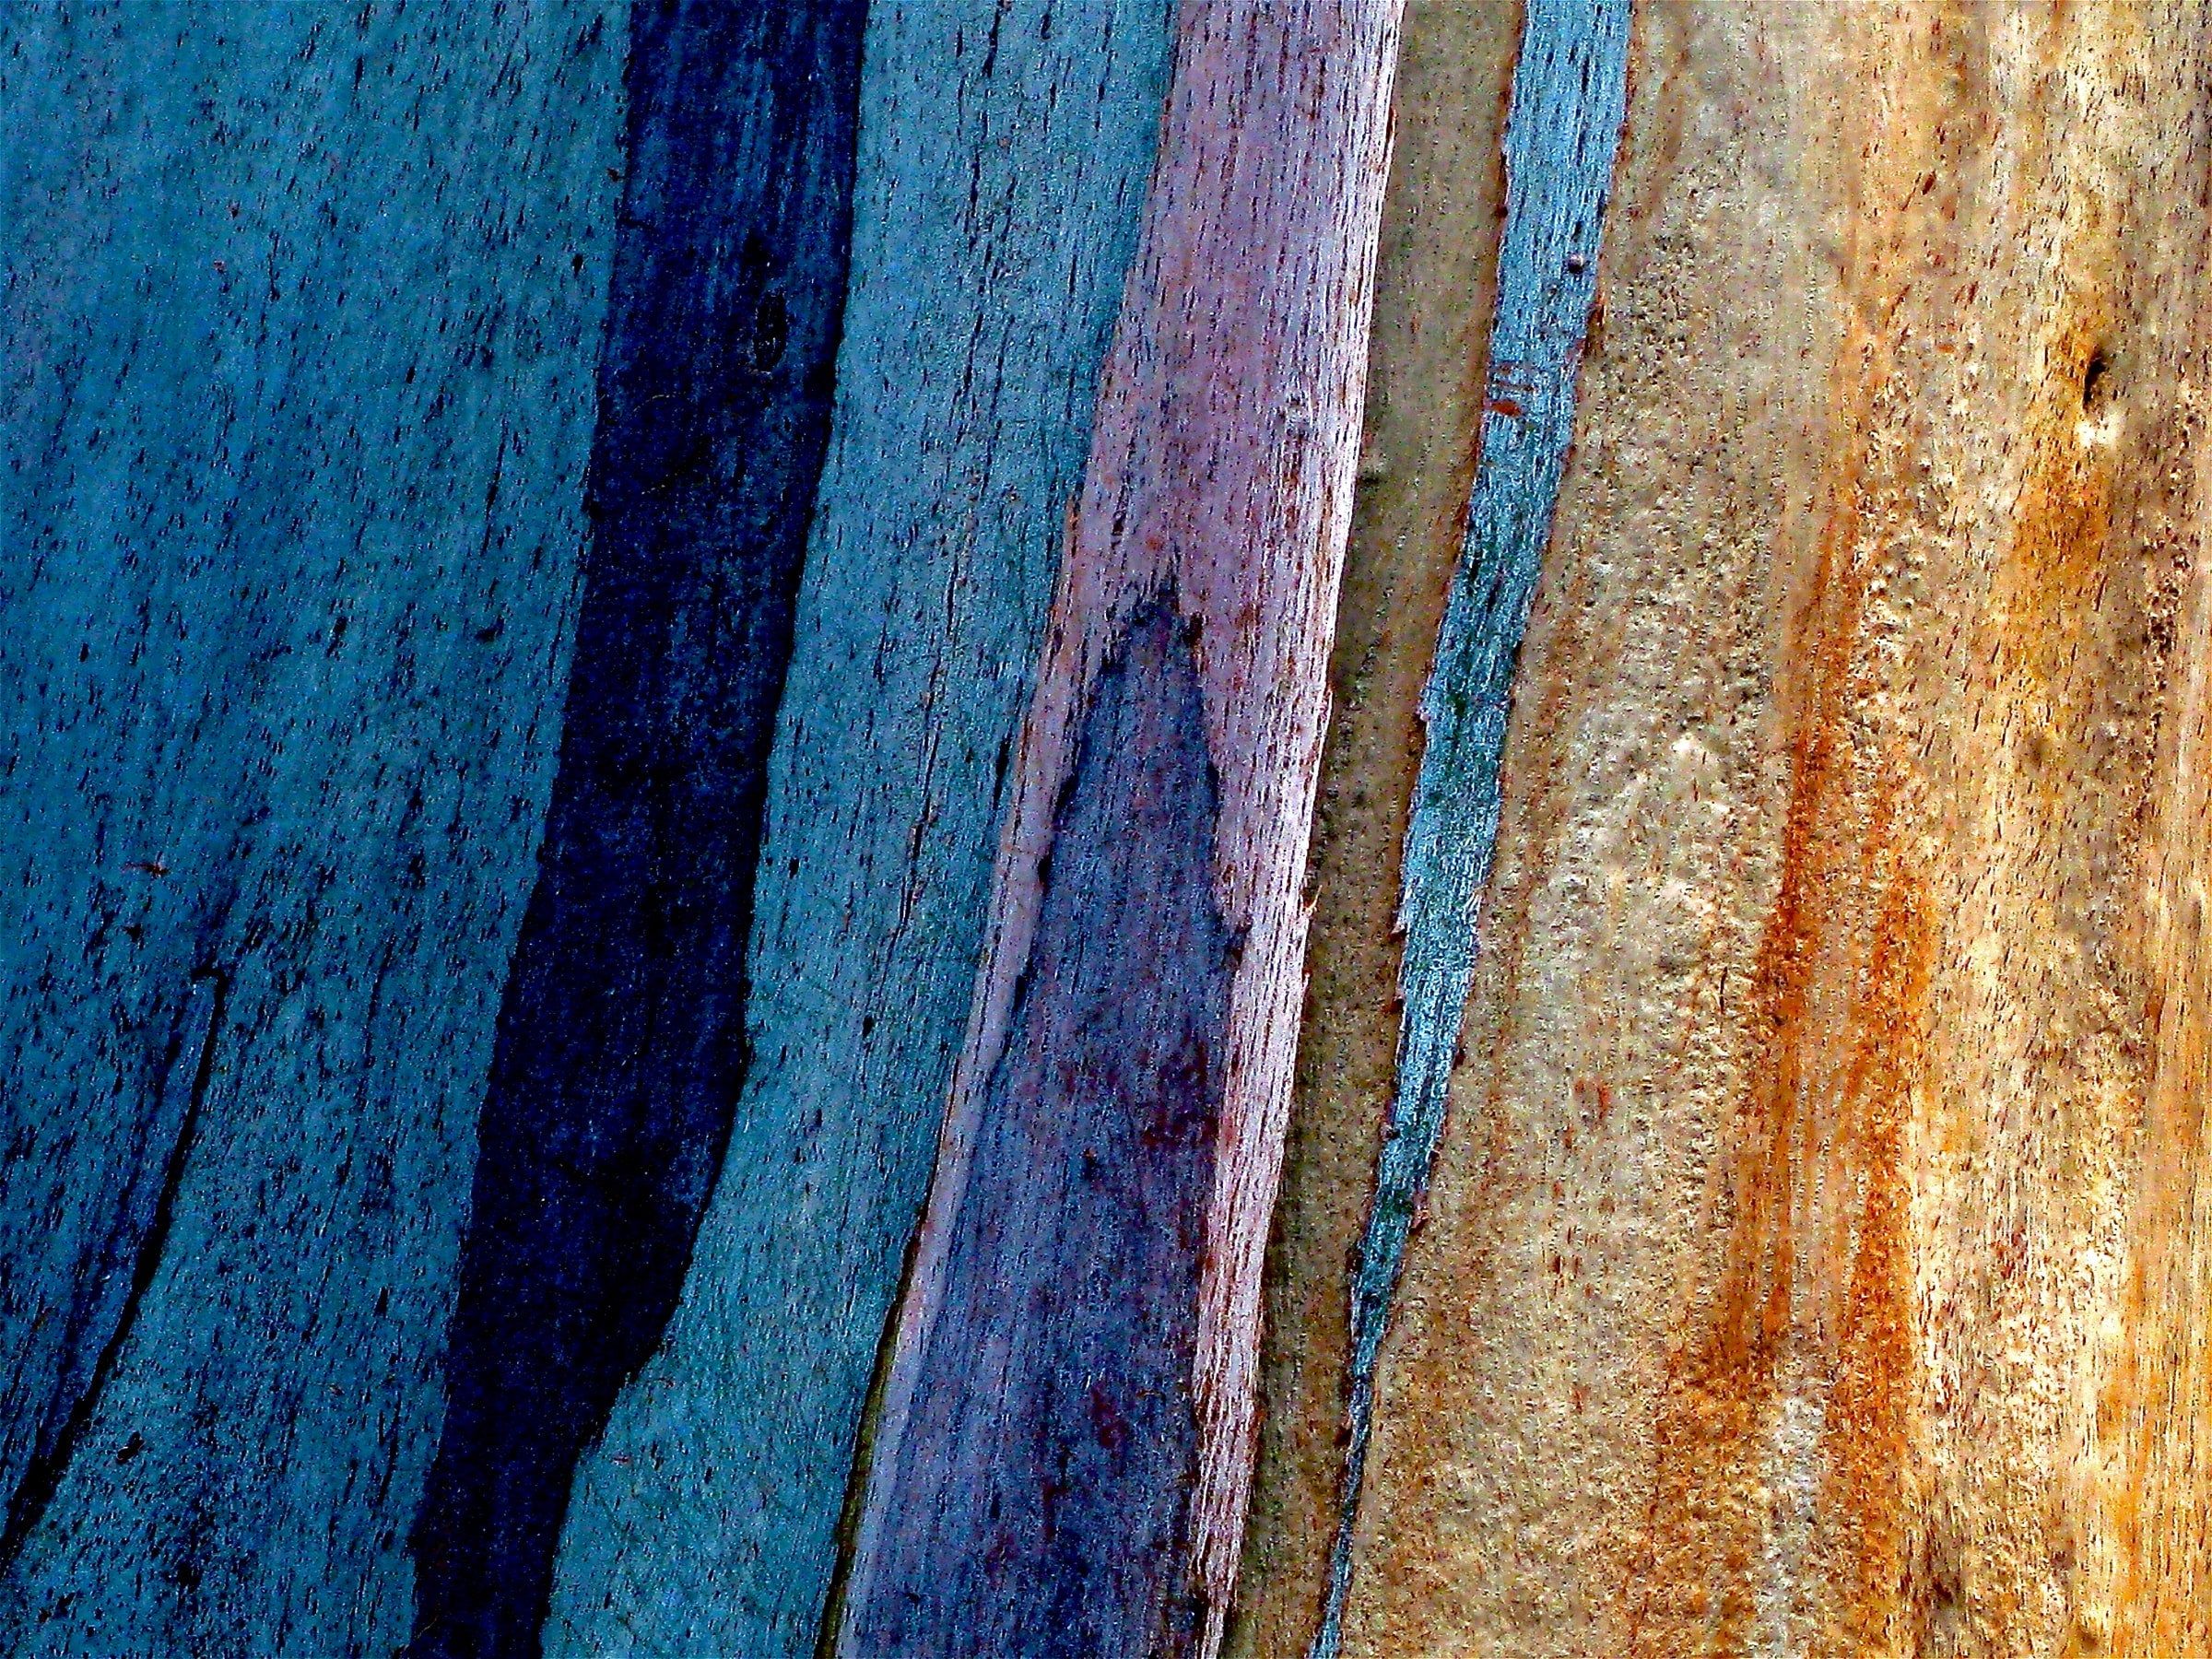 Multi-colored tree trunk in closeup